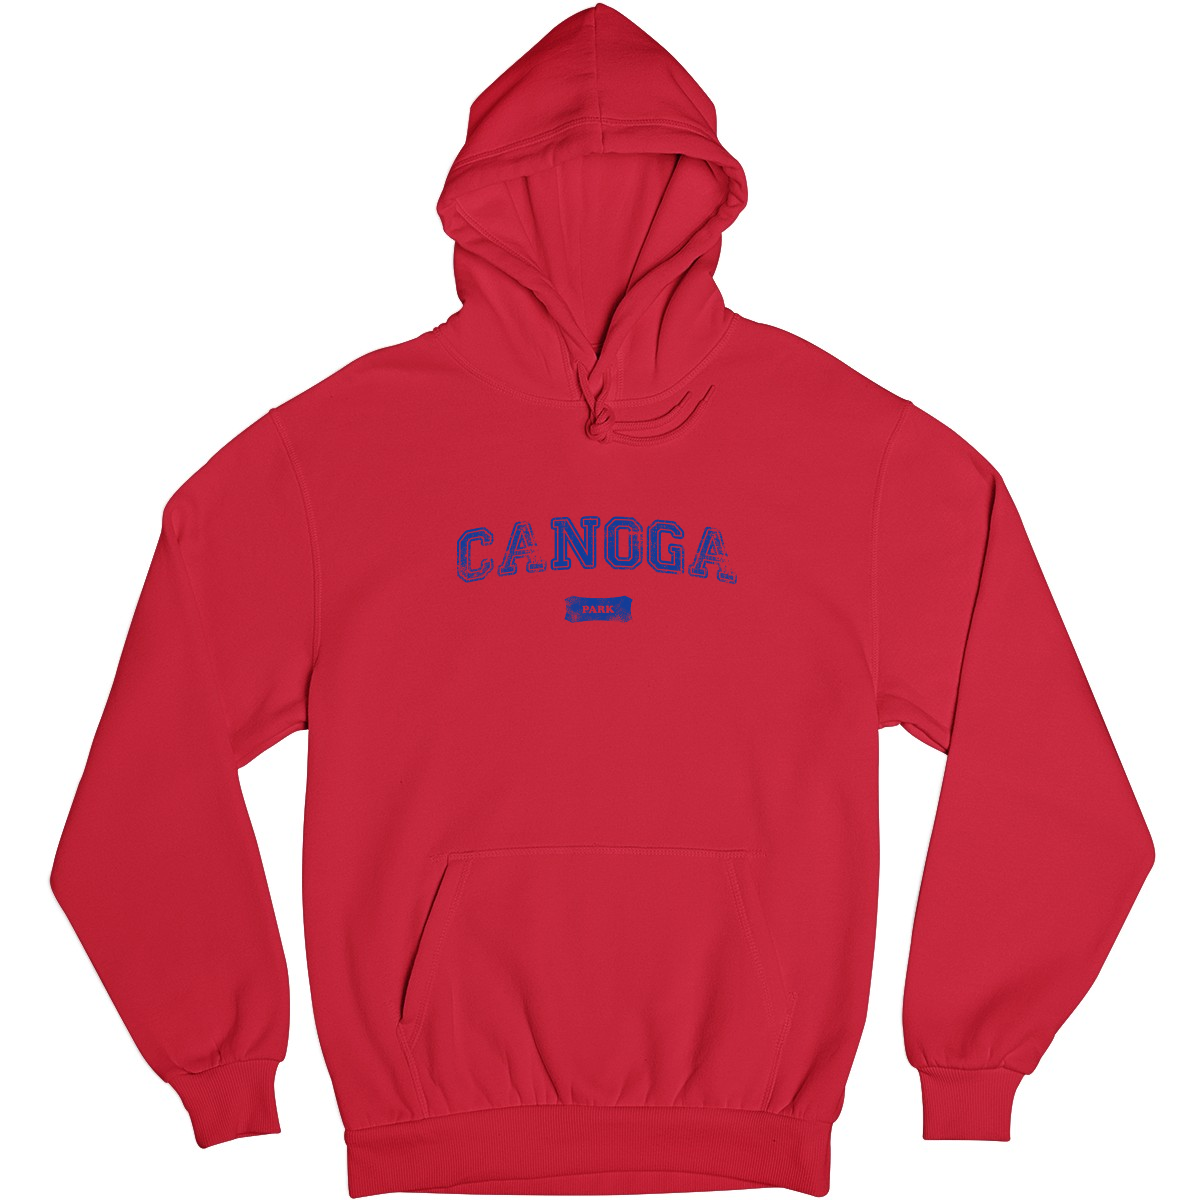 Canoga Park Represent Unisex Hoodie | Red